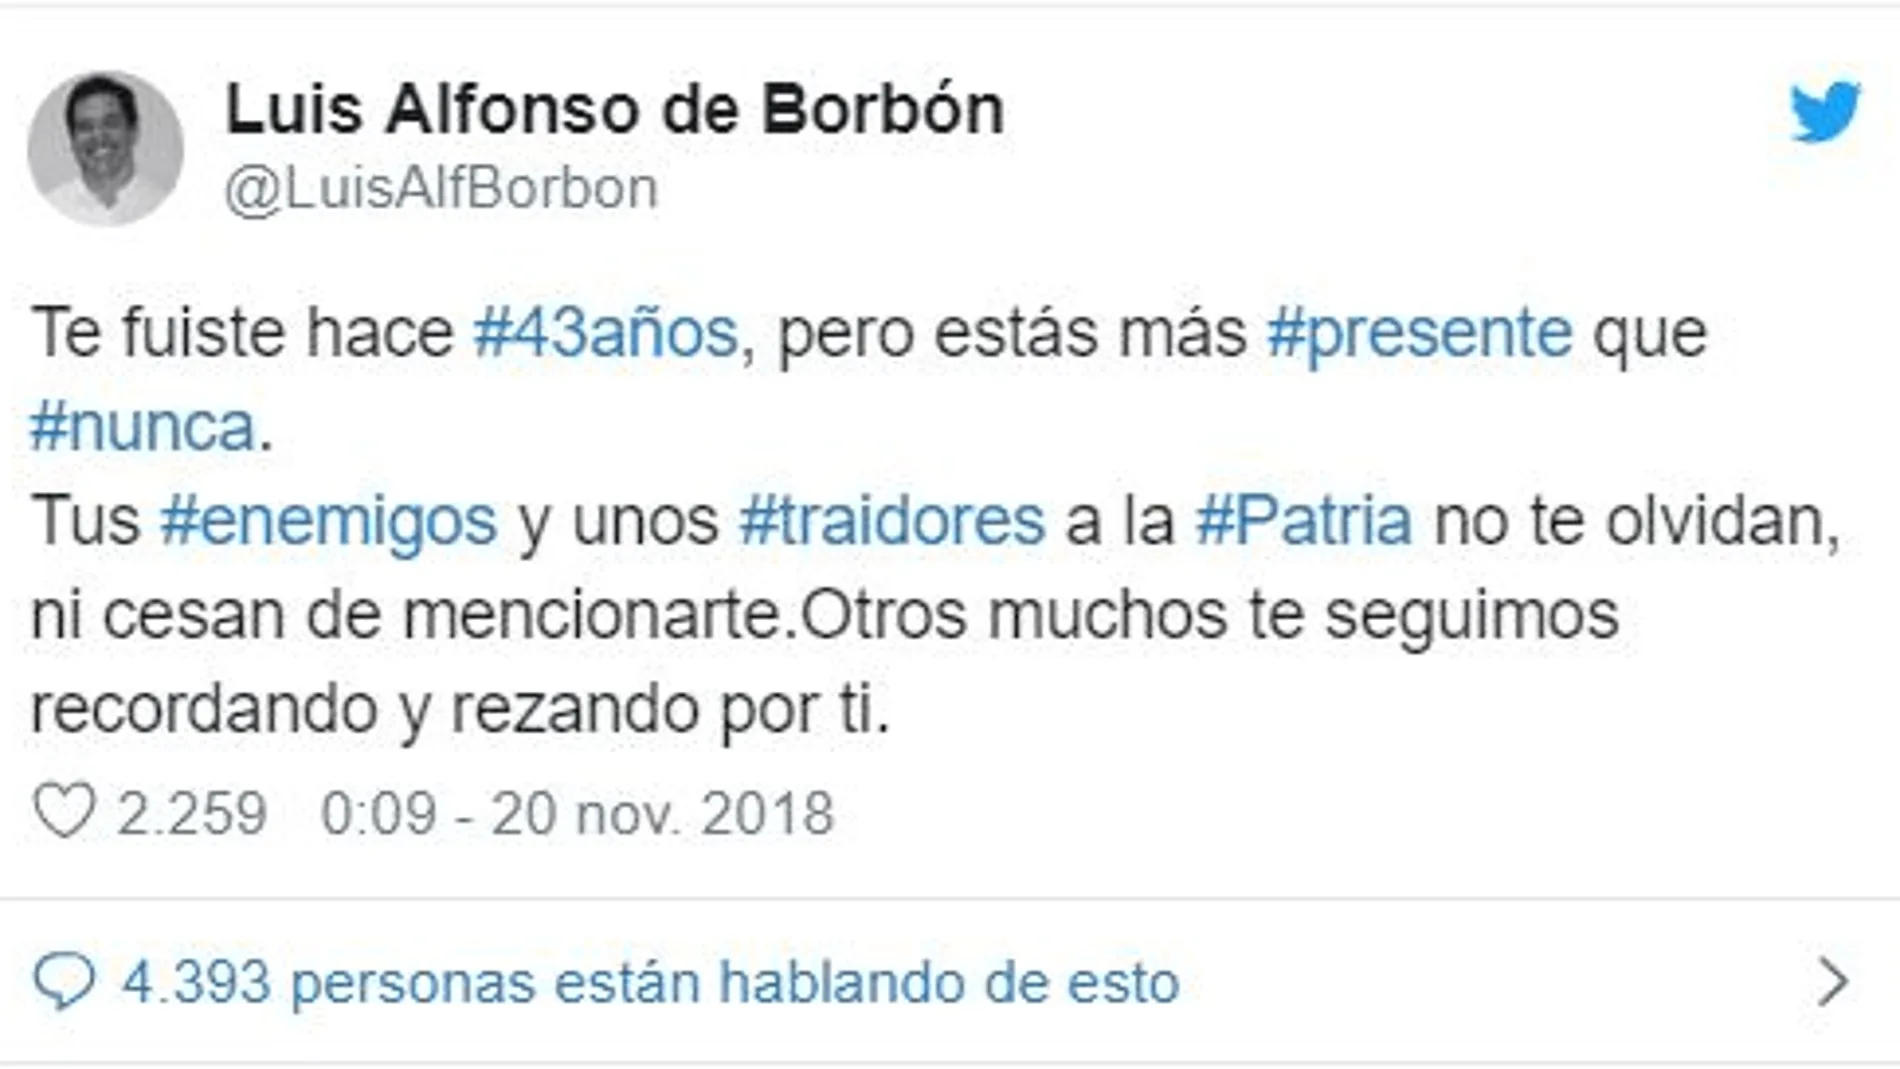 Luis Alfonso de Borbón la lía en Twitter con su mensaje sobre Franco el 20-N